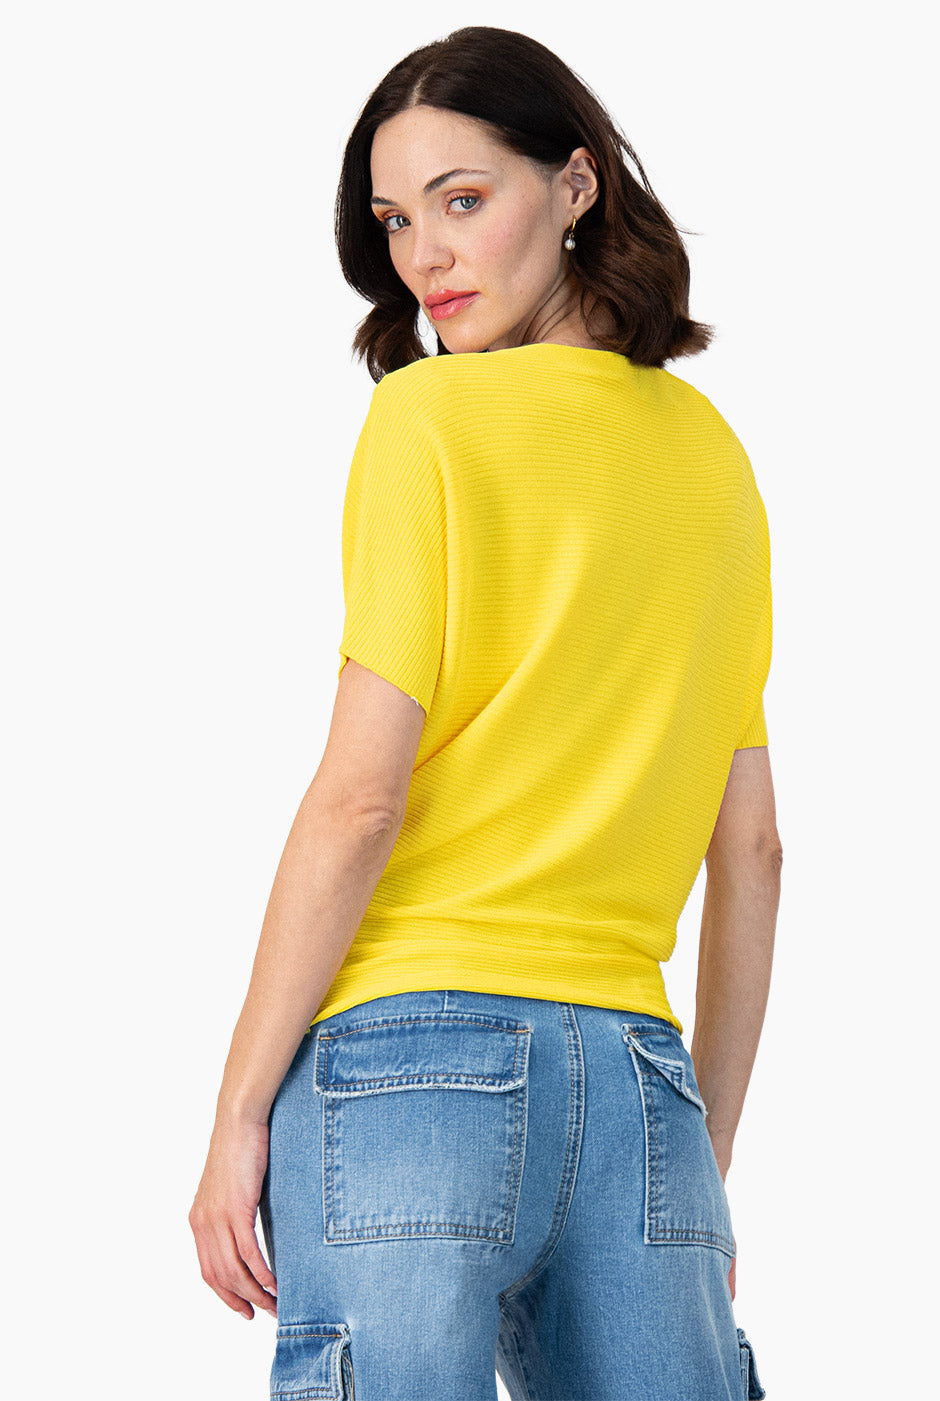 Blusa manga corta color amarillo